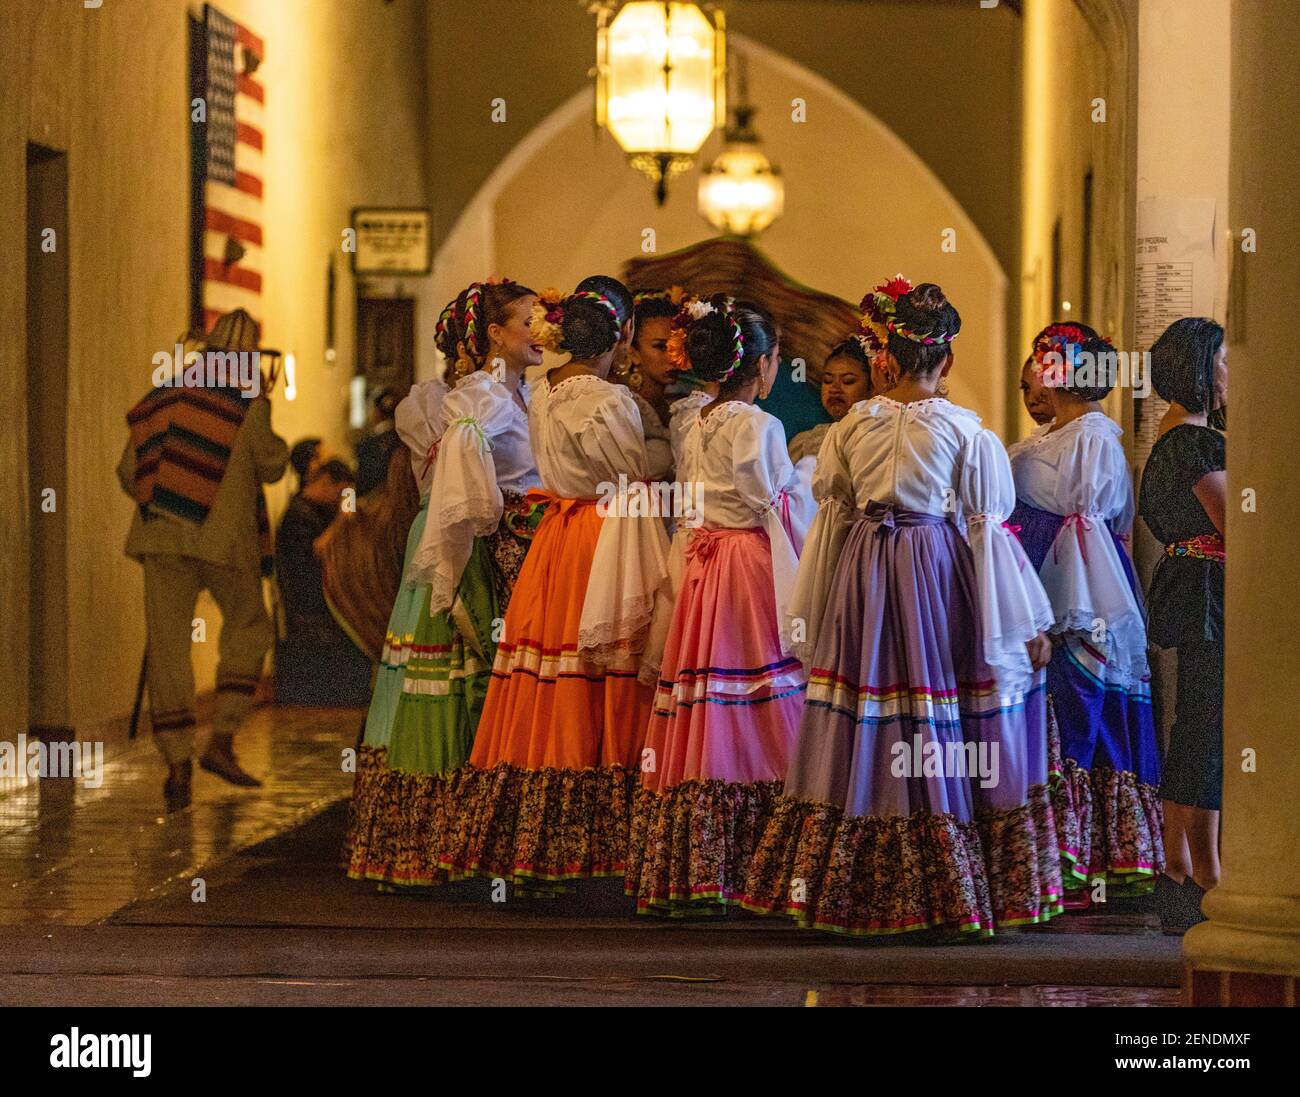 August 1, 2019 - Santa Barbara, CA: Alma de Mexico prepares to perform on  the Sunken Garden Stage. The Santa Barbara Old Spanish Days Fiesta  celebrates Las Noches de Ronda, “Nights of